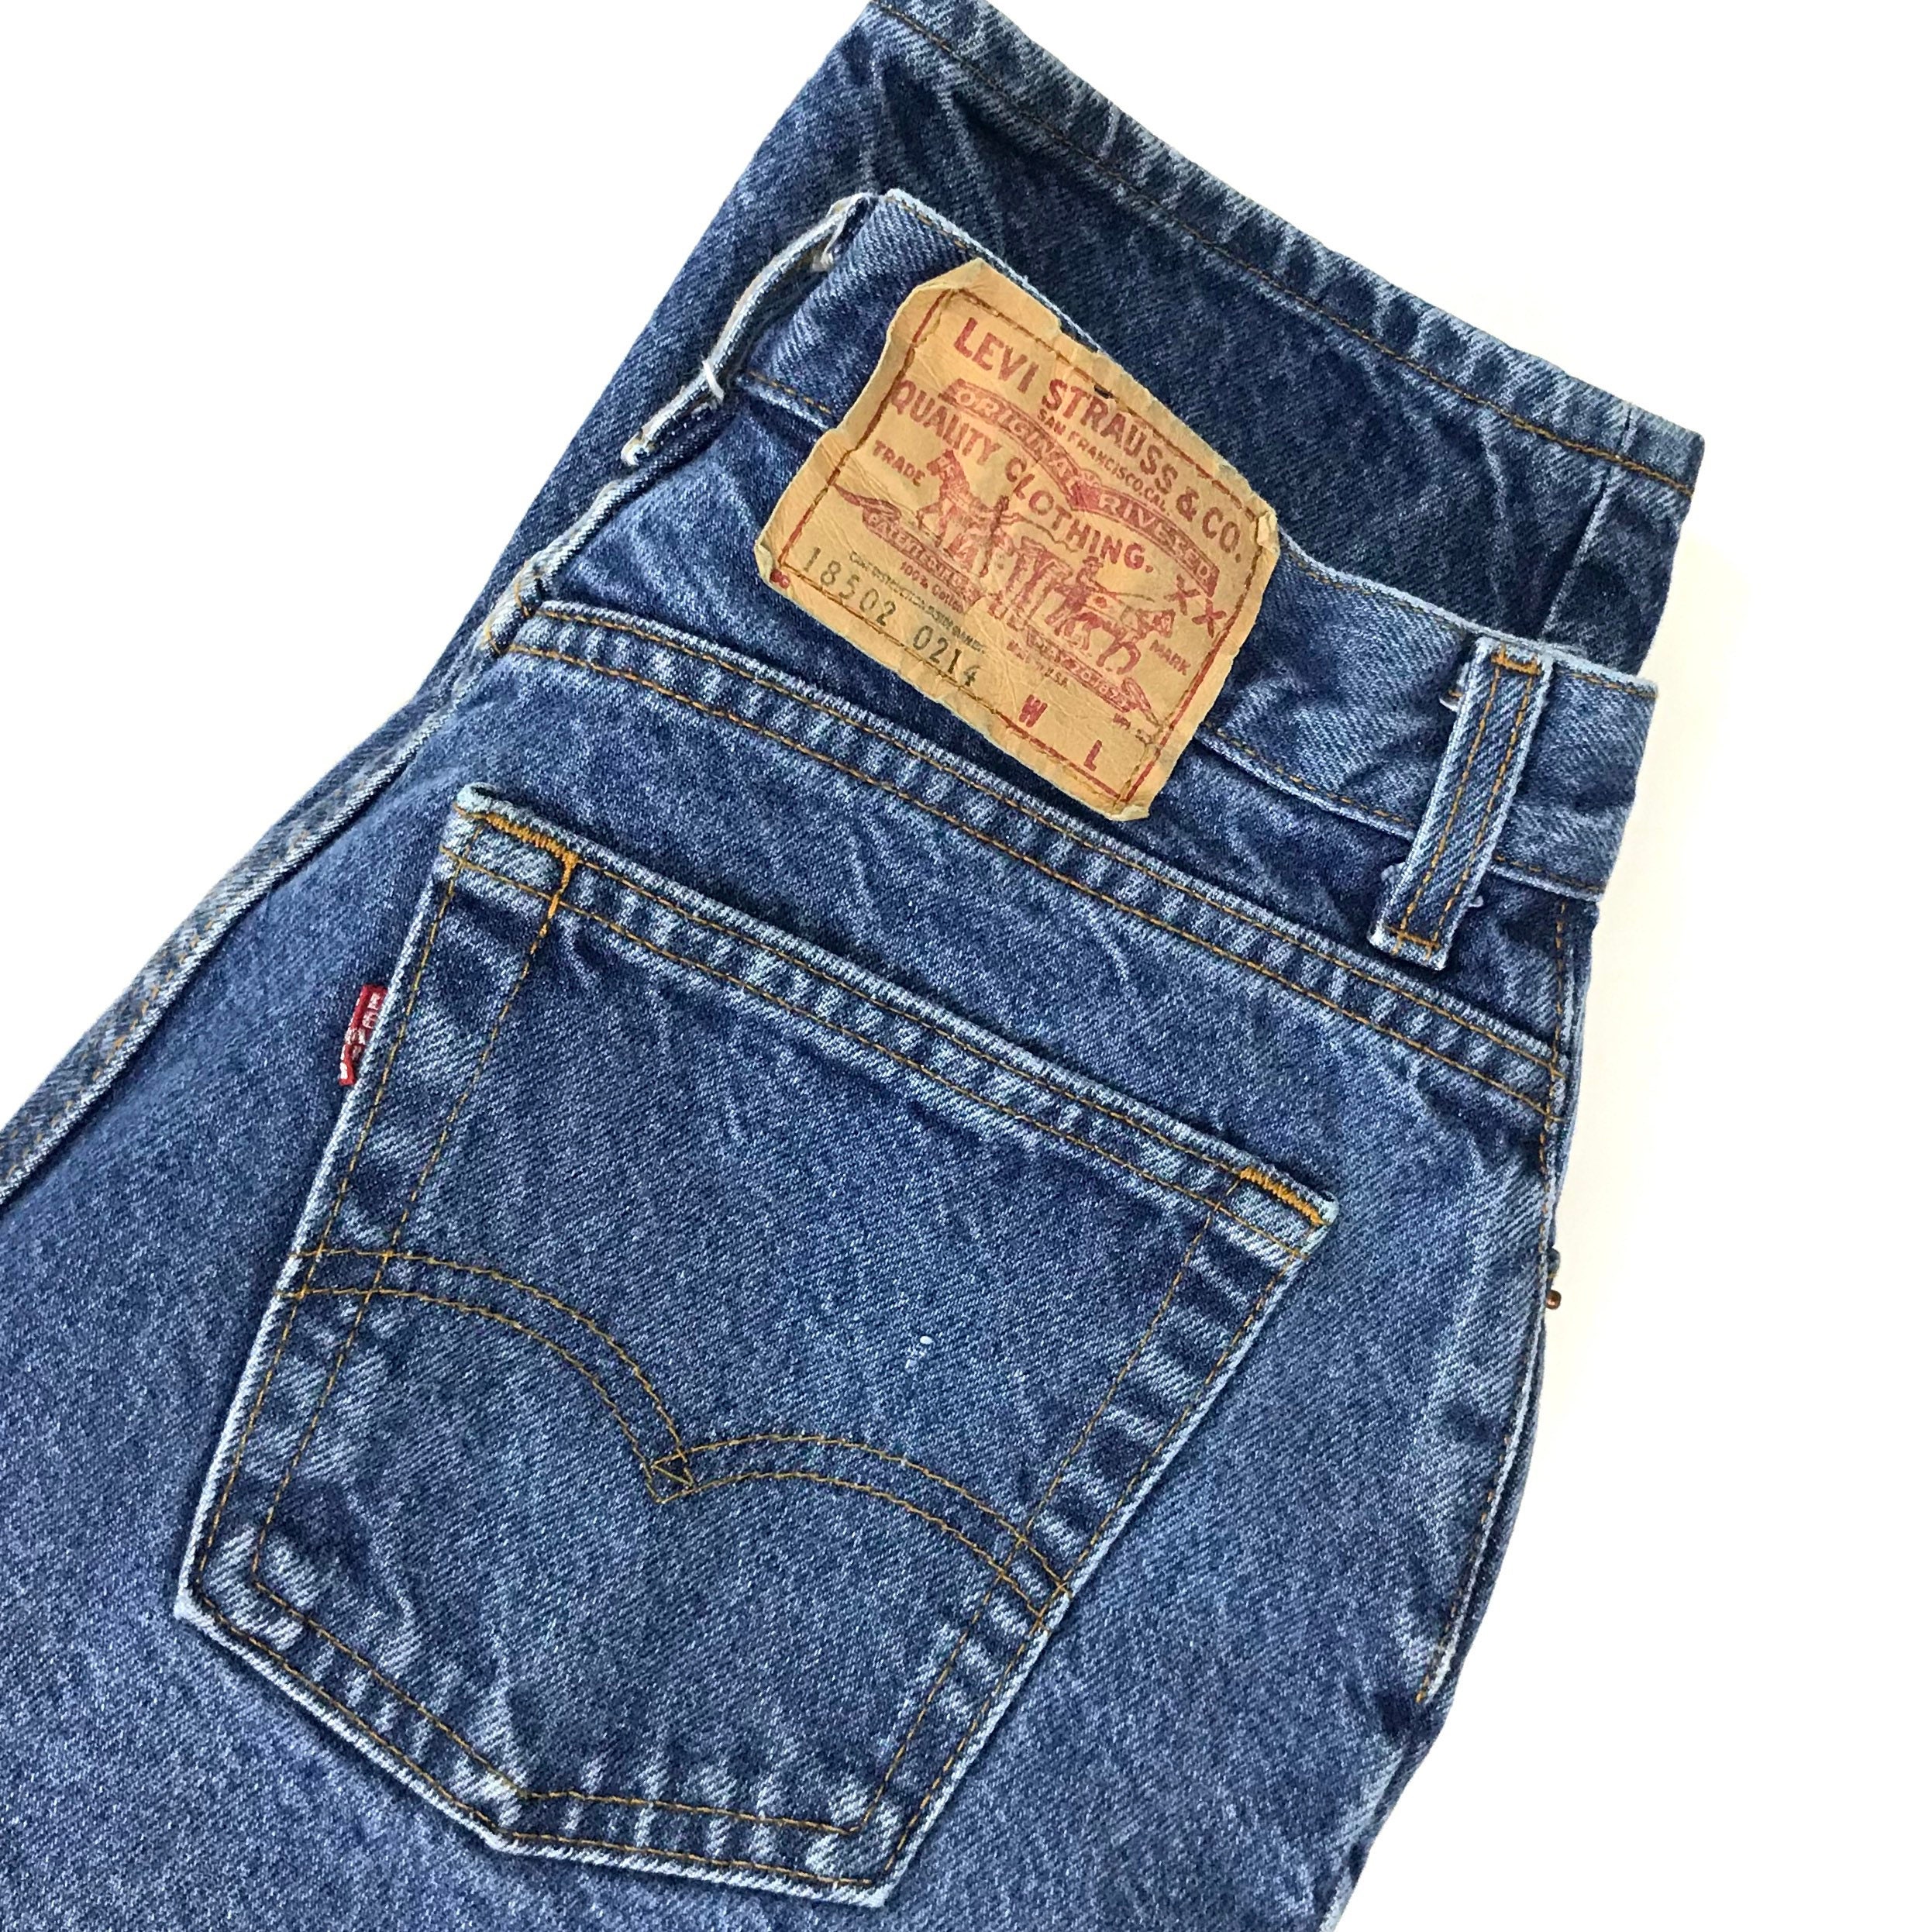 Levi's 502 Vintage Jeans / Size 30